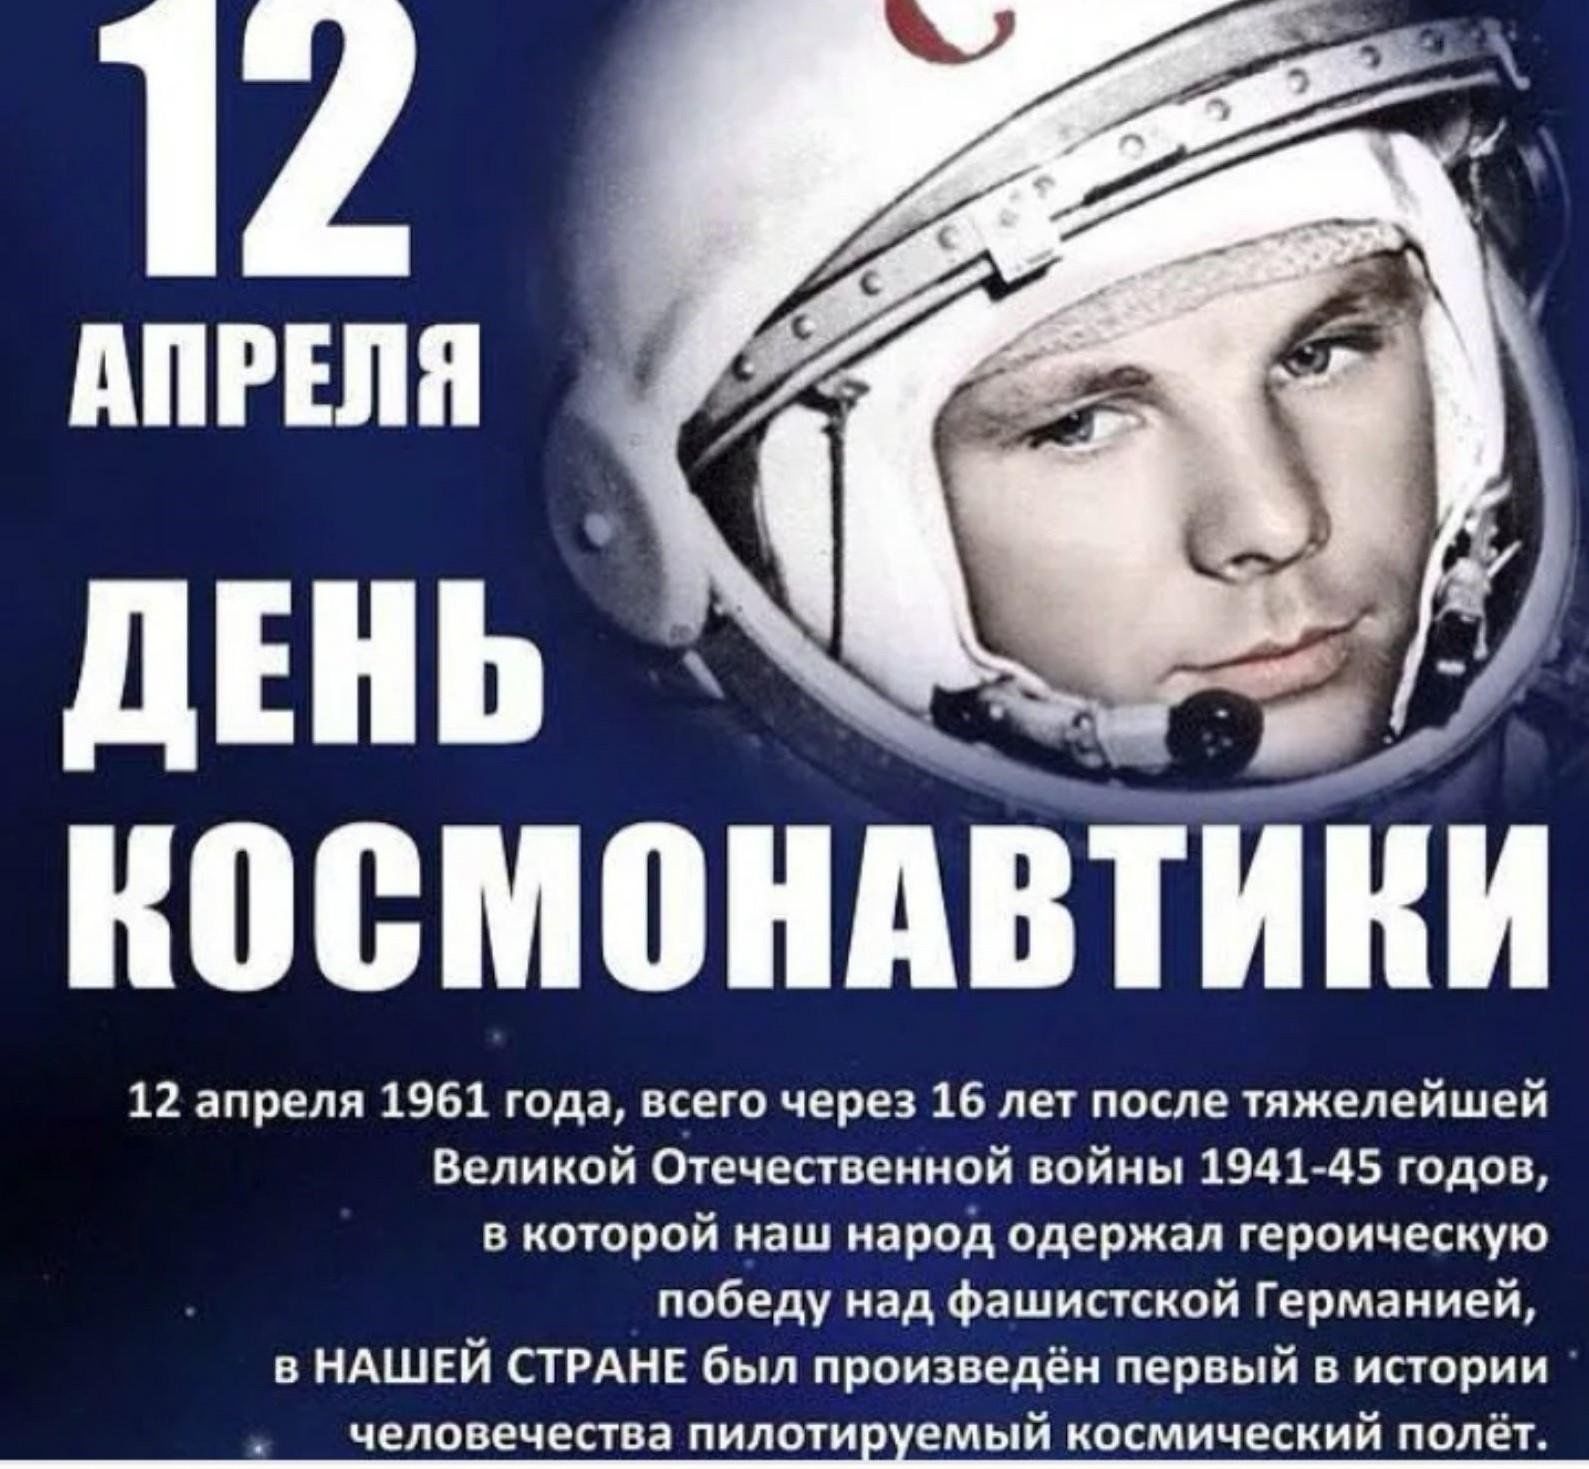 4 апреля день космонавтики. 12 Апреля день космонавтики. День Космонавта. СССРТС днем космонавтики. 12 - Апрель день косонавтики.